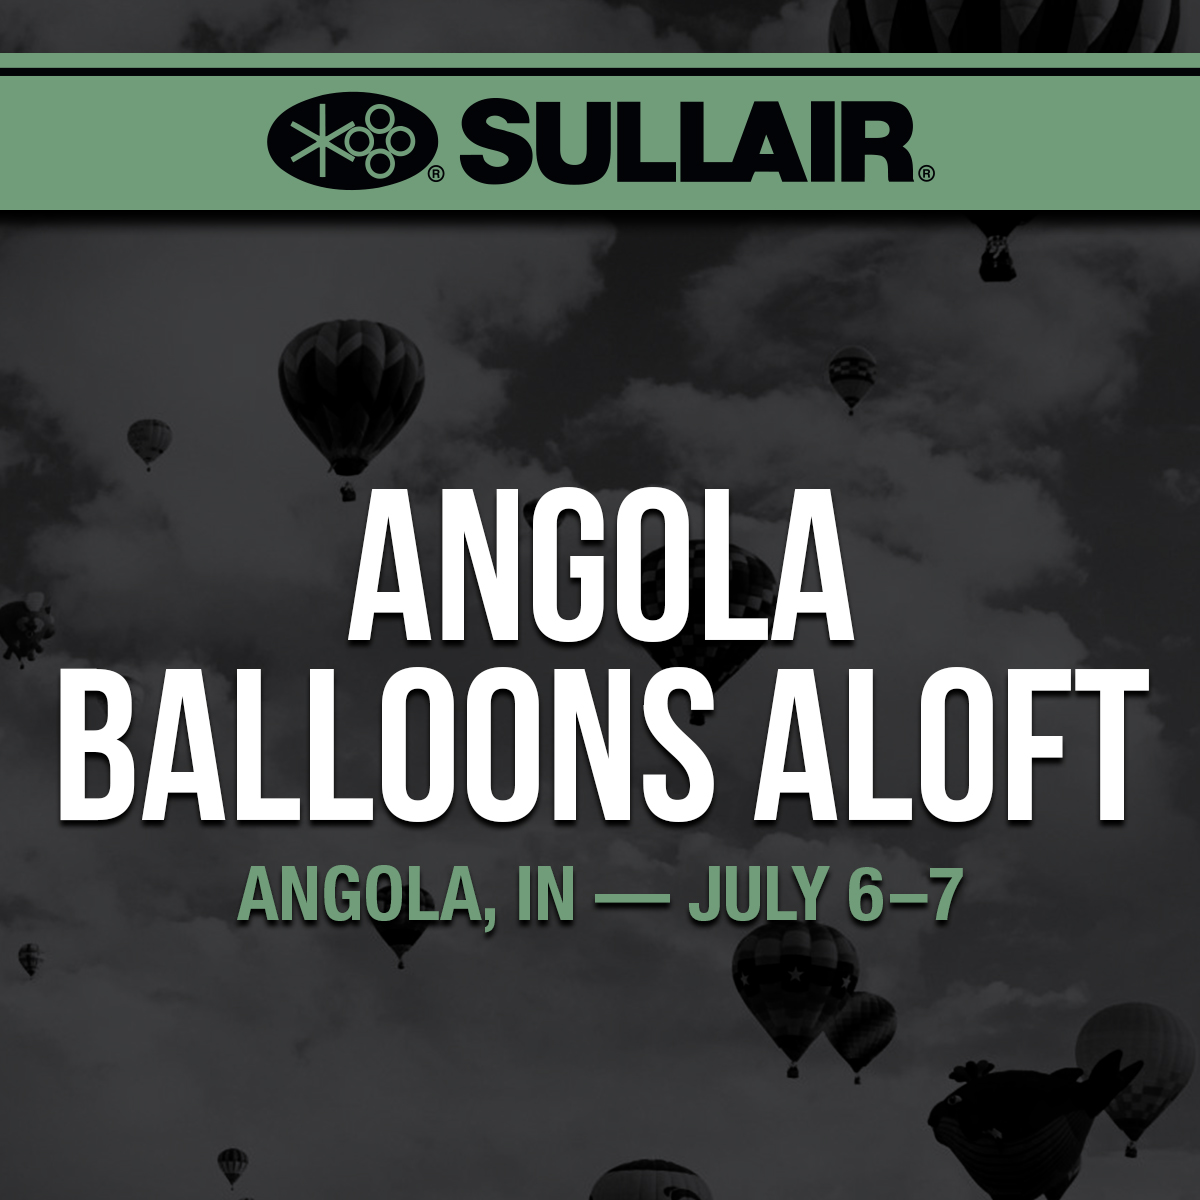 Angola Balloons Aloft